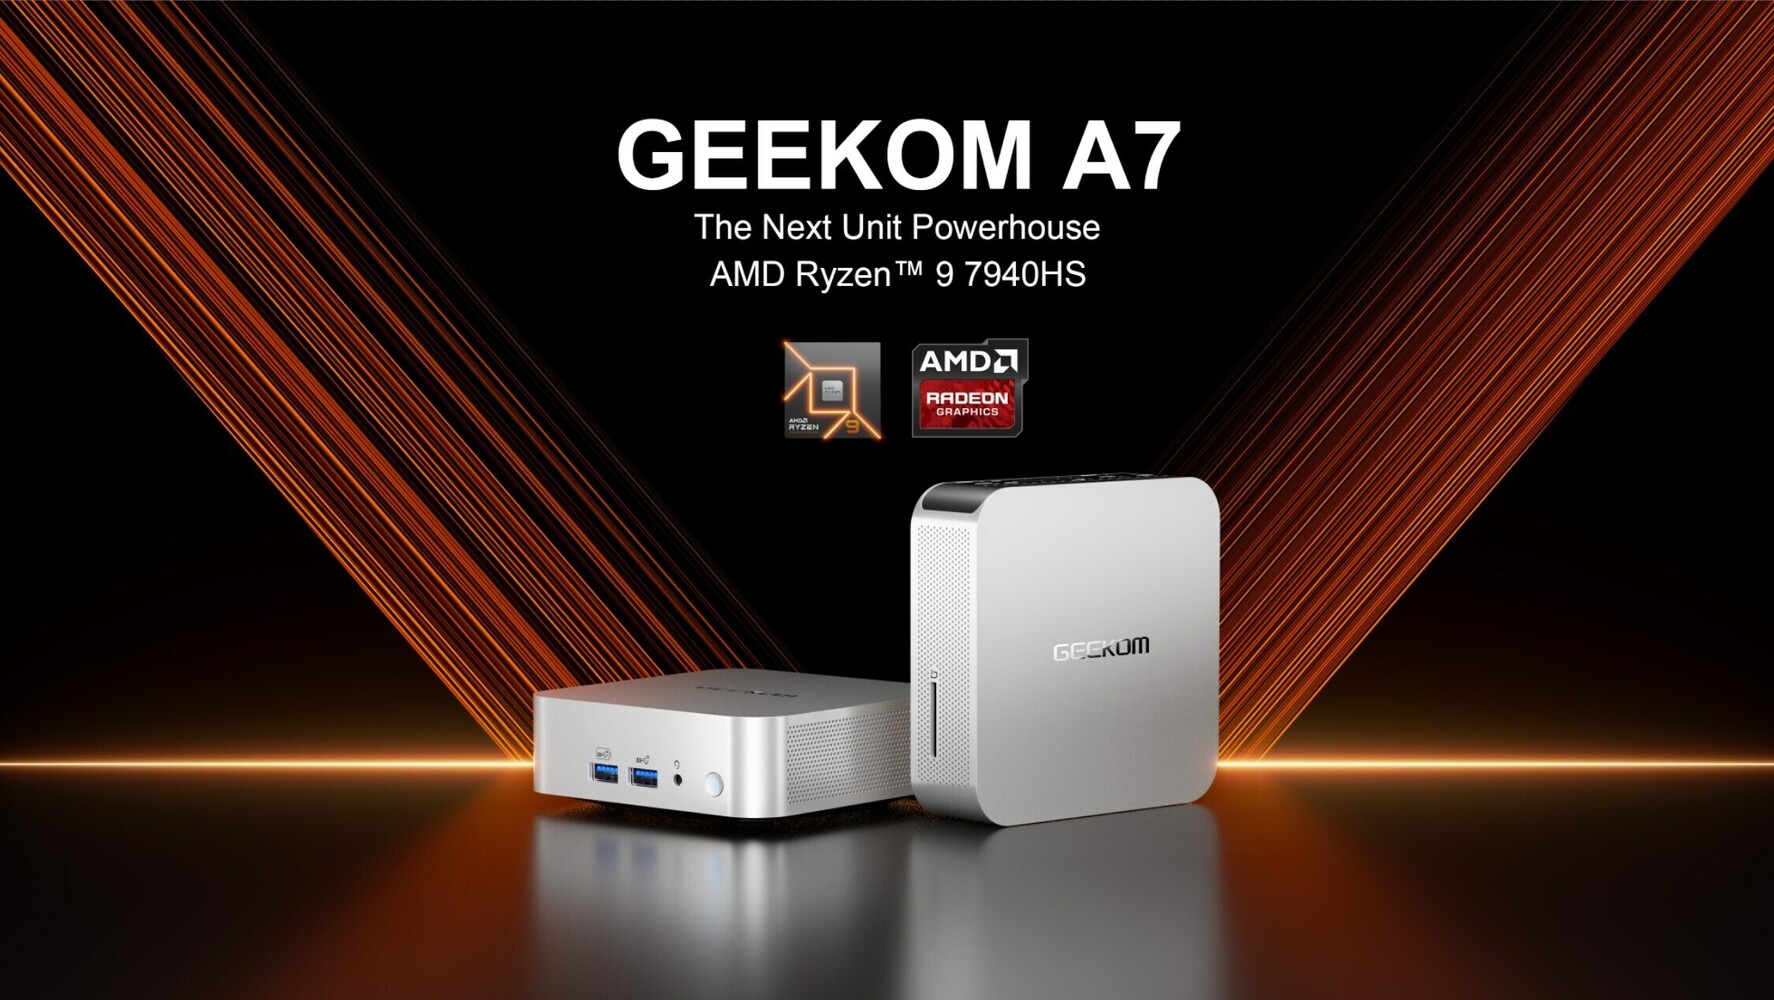 GEEKOM A7 Mini PC Powered by AMD Ryzen 9 Phoenix Open to Pre